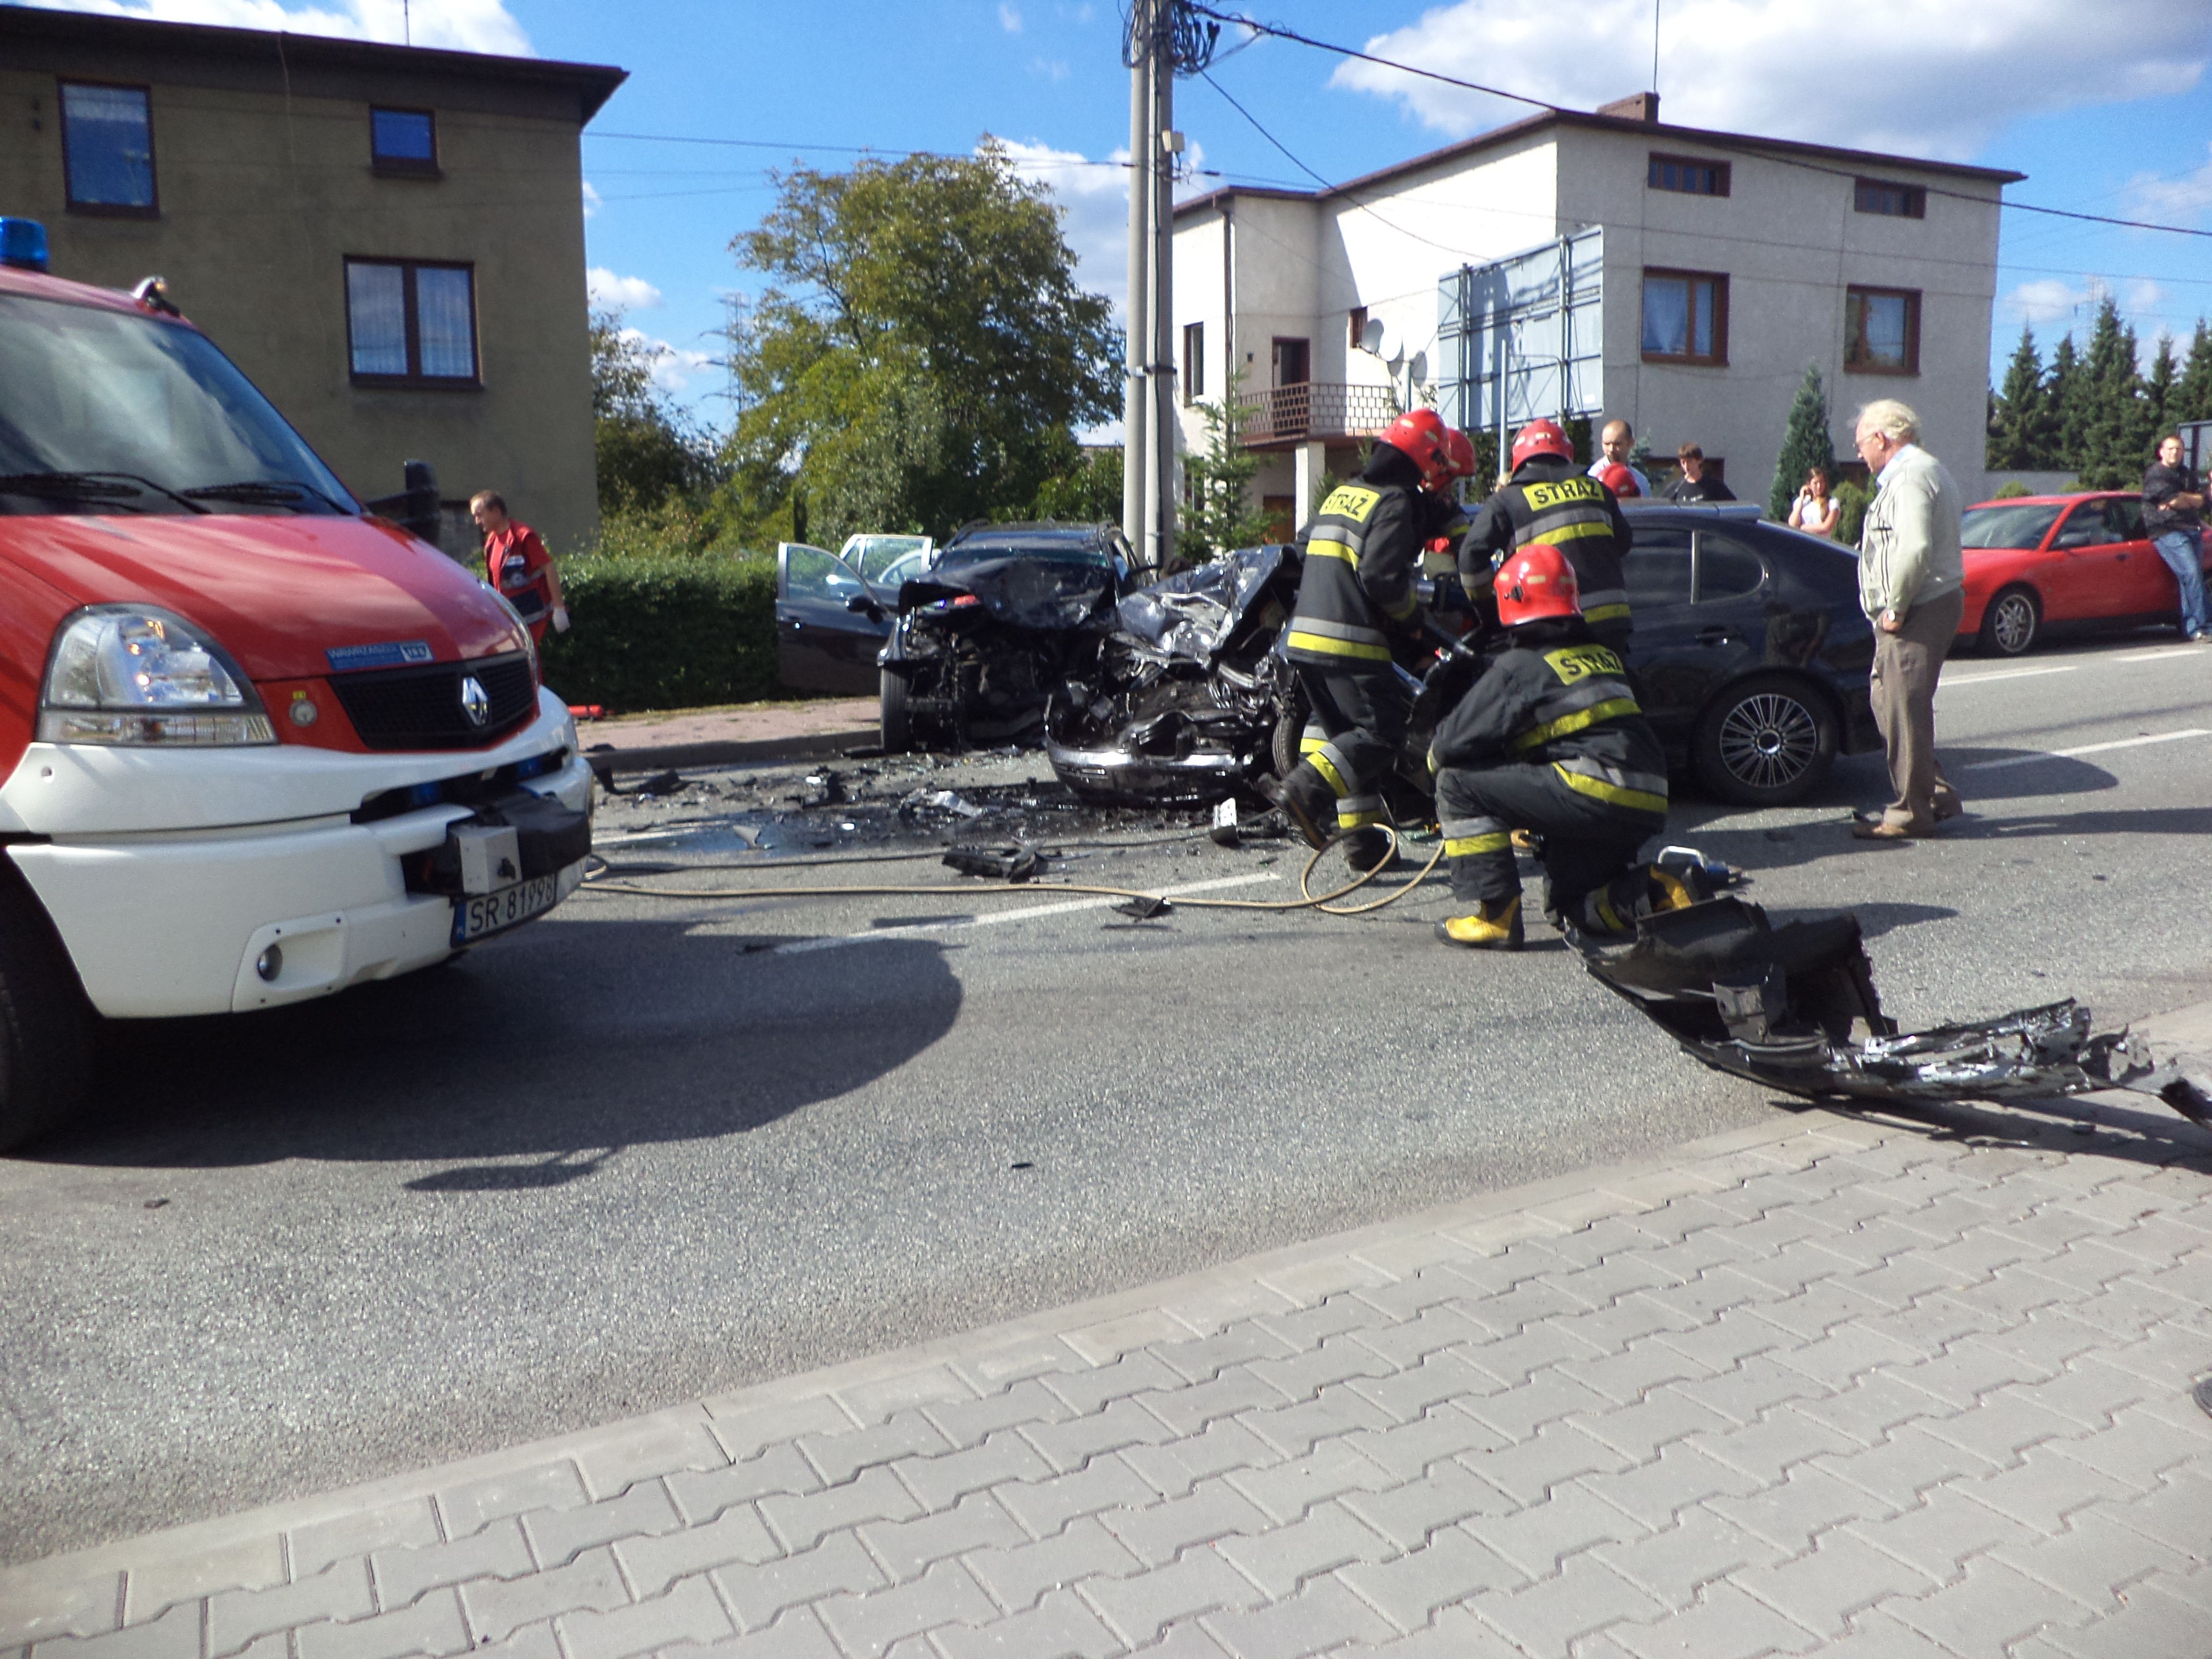 Wodzisławianin uczestniczył w śmiertelnym wypadku w Rybniku, źródło: Rybnik.com.pl